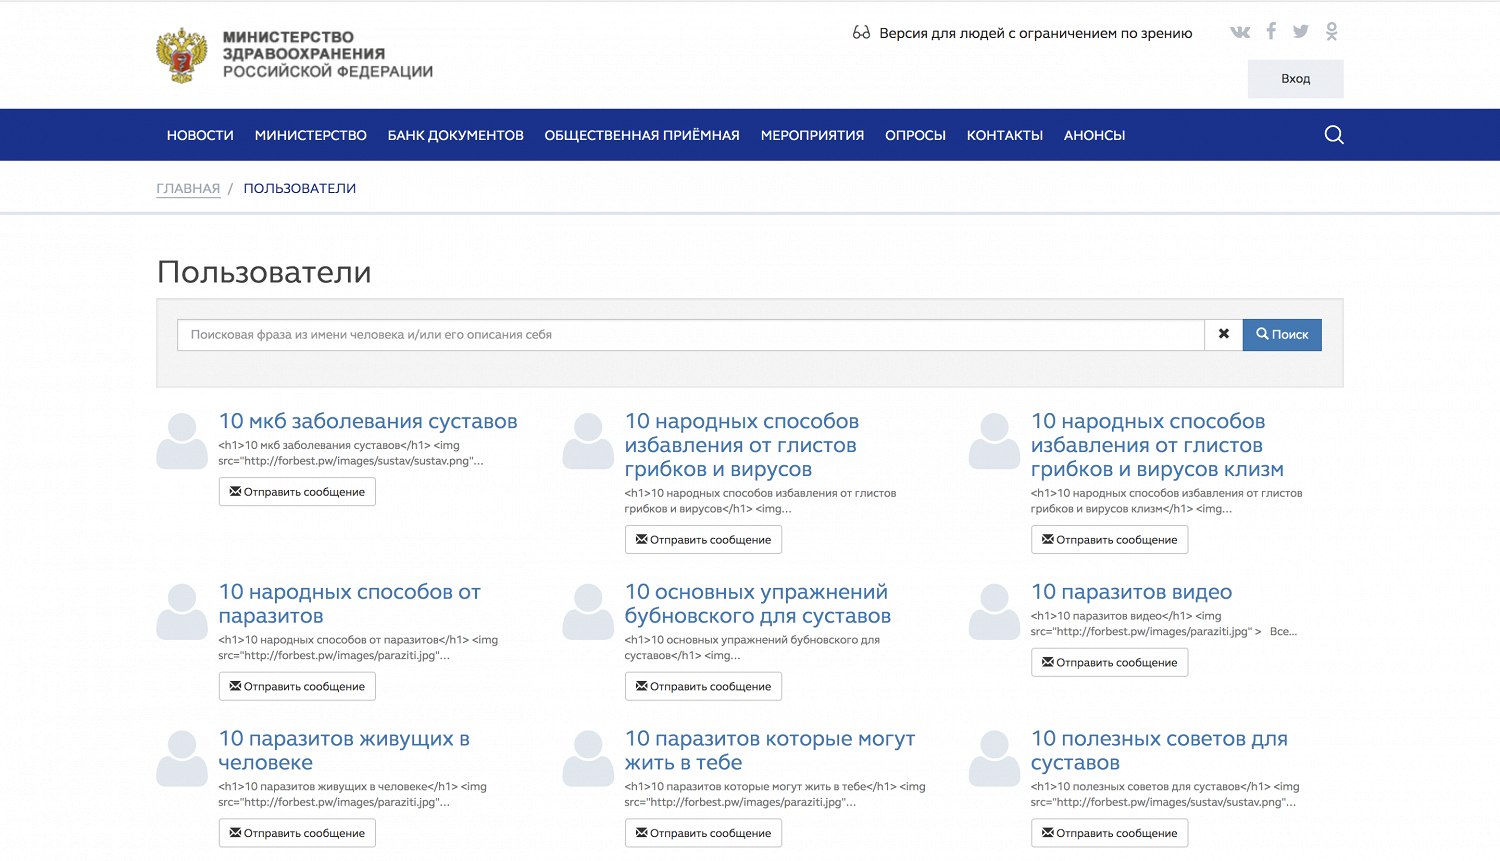 Федеральный сайт министерства здравоохранения. Министерство здравоохранения. Публикует на официальном сайте Министерства здравоохранения.